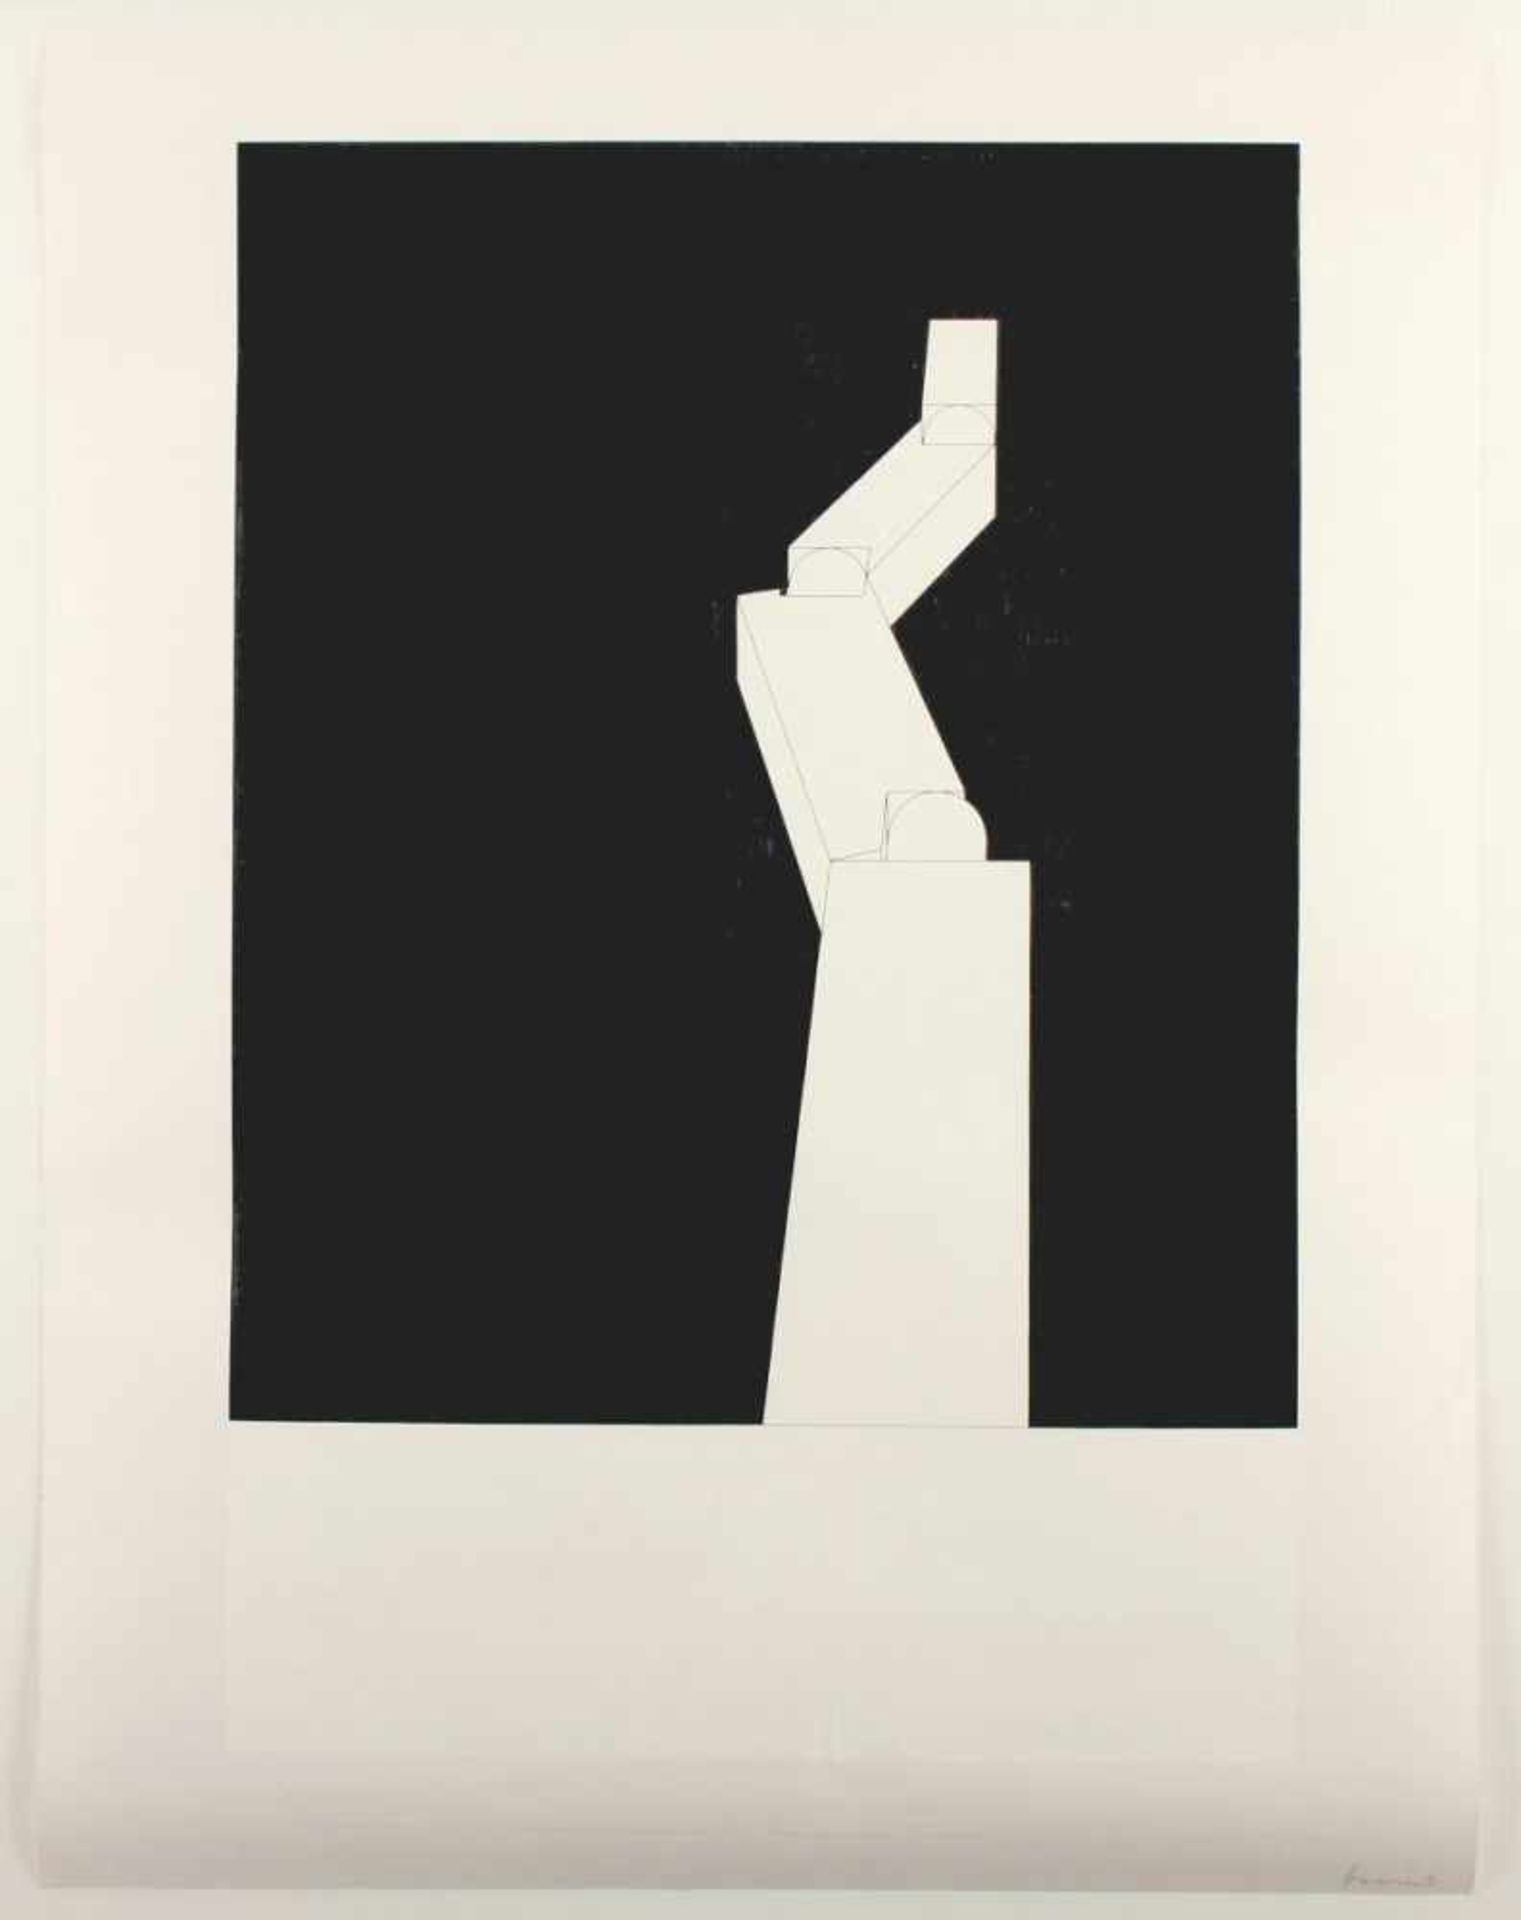 HEERICH, Erwin, "o.T.", Offset, 49 x 65, Publikation der Kunstakademie Düsseldorf, 1986, Auflage 200